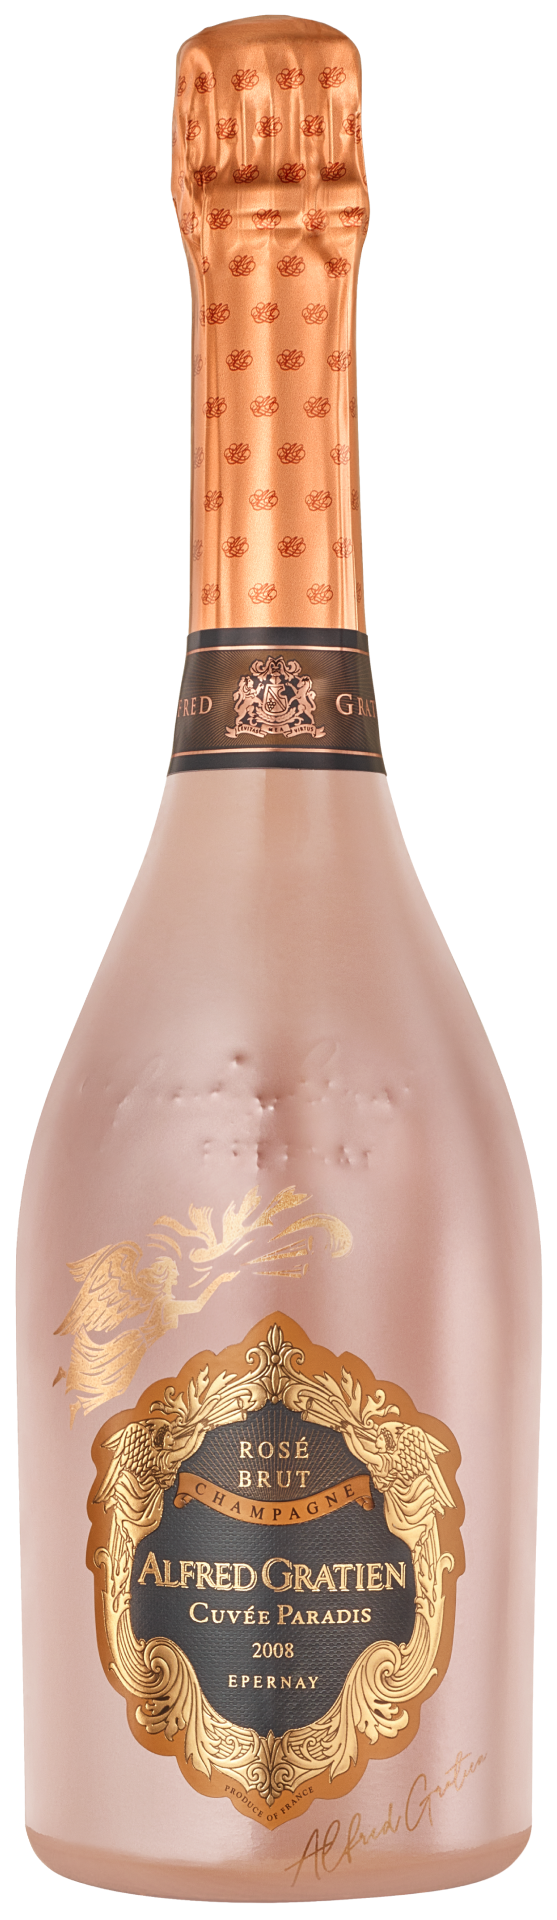 La bouteille de la Cuvée Paradis Rosé 2008 d'Alfred Gratien.